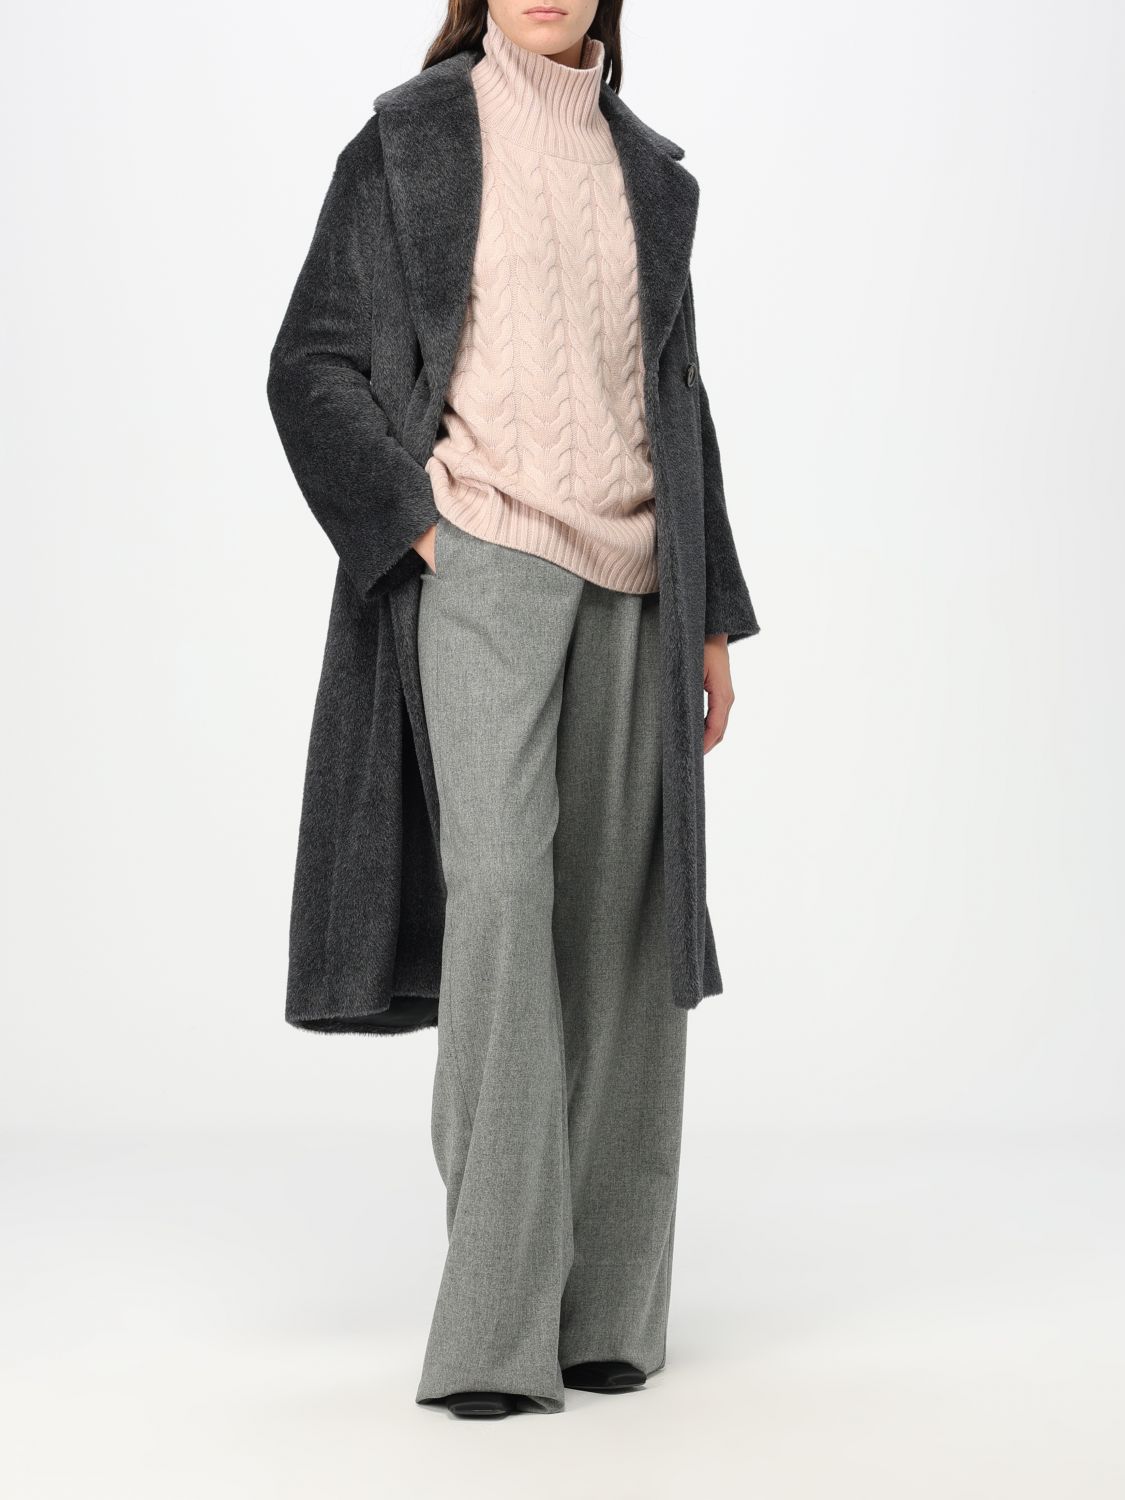 Cappotto donna grigio chiaro in lana double MaxMara S VENICE 070 - Bibas